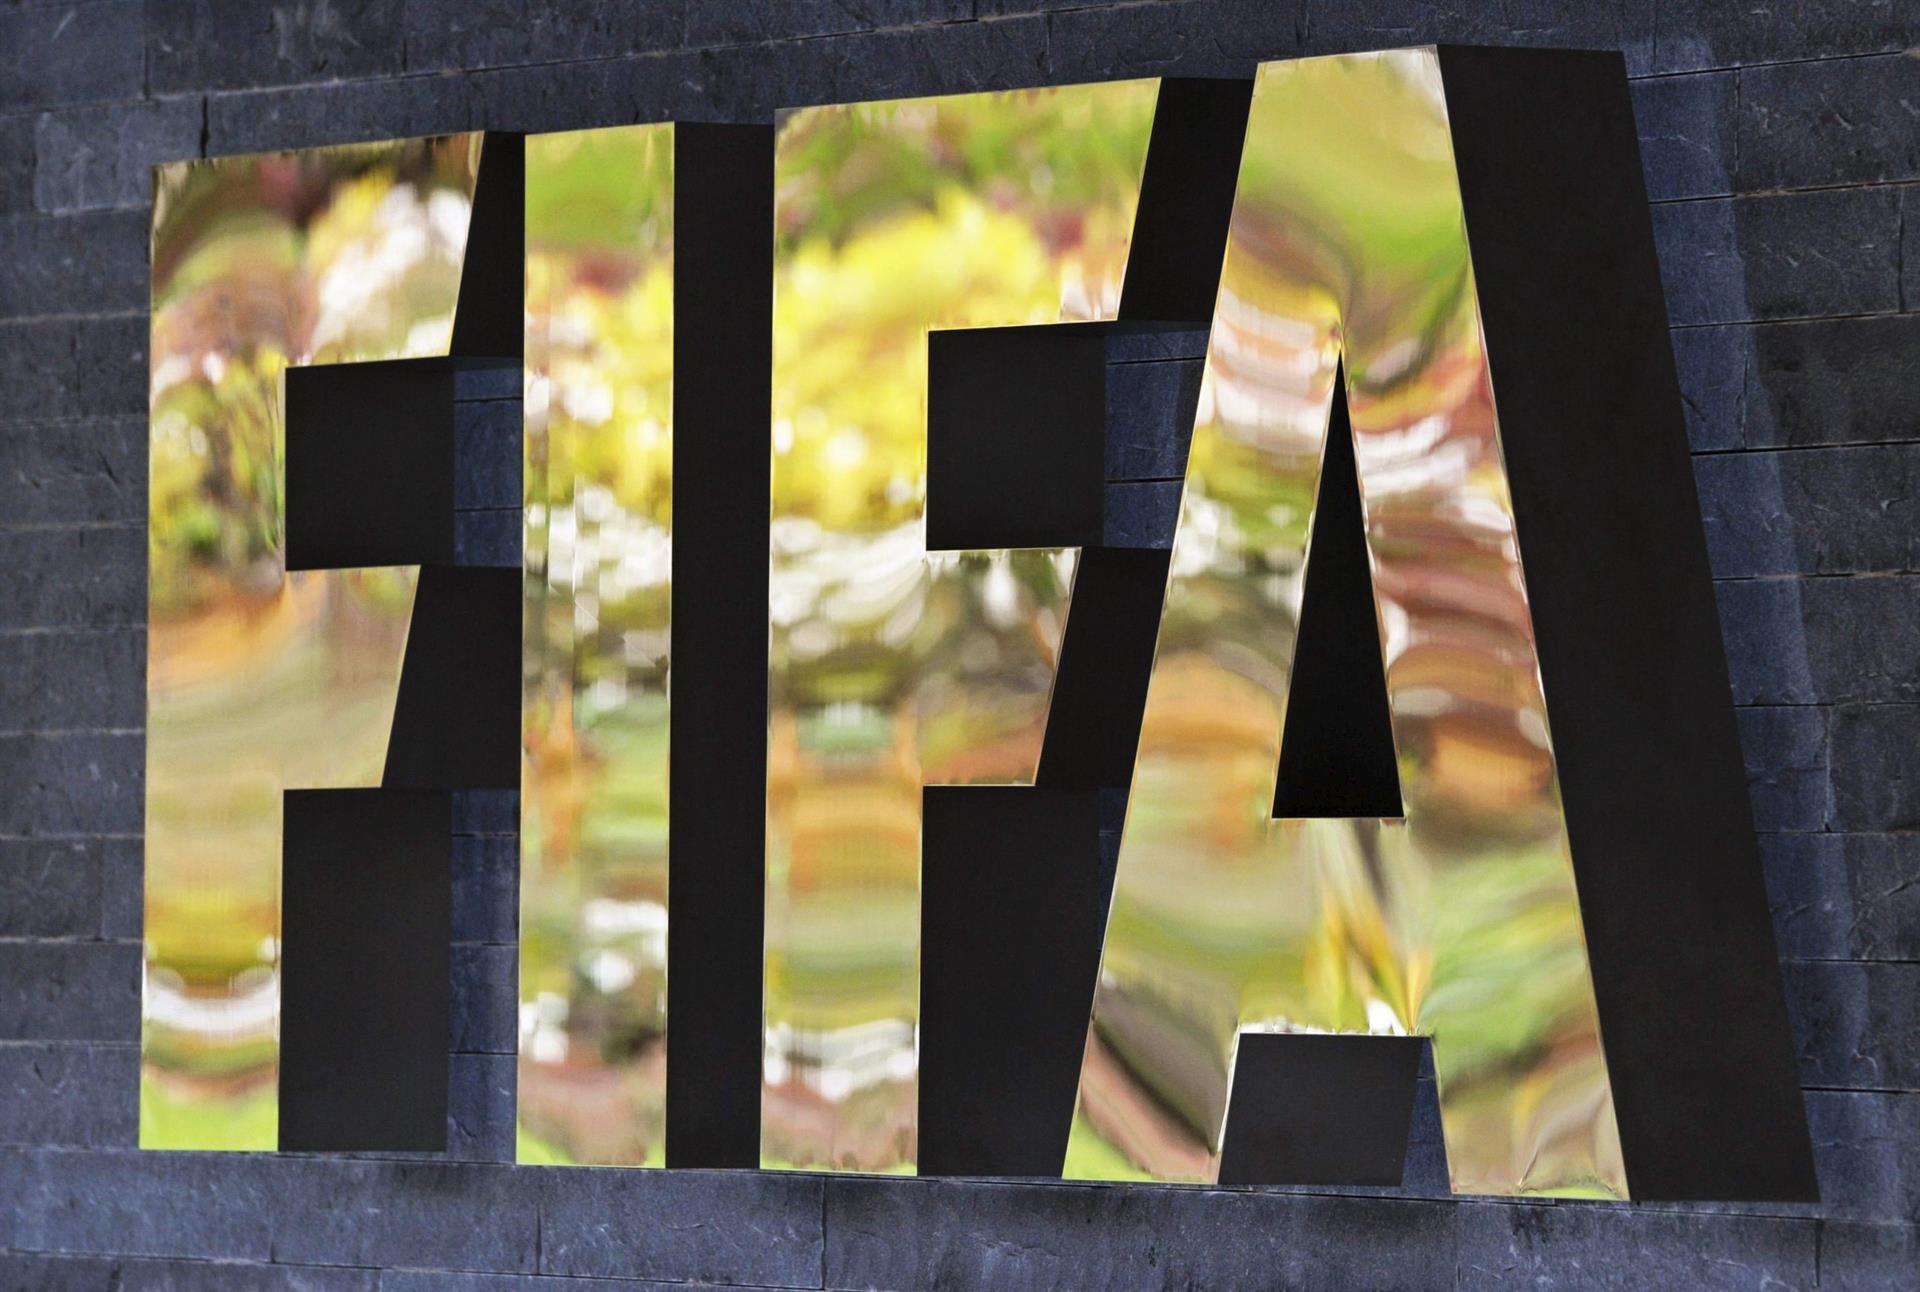 Fifagate: detalles del mayor escándalo de corrupción en la historia del fútbol que involucró a Rusia y Qatar